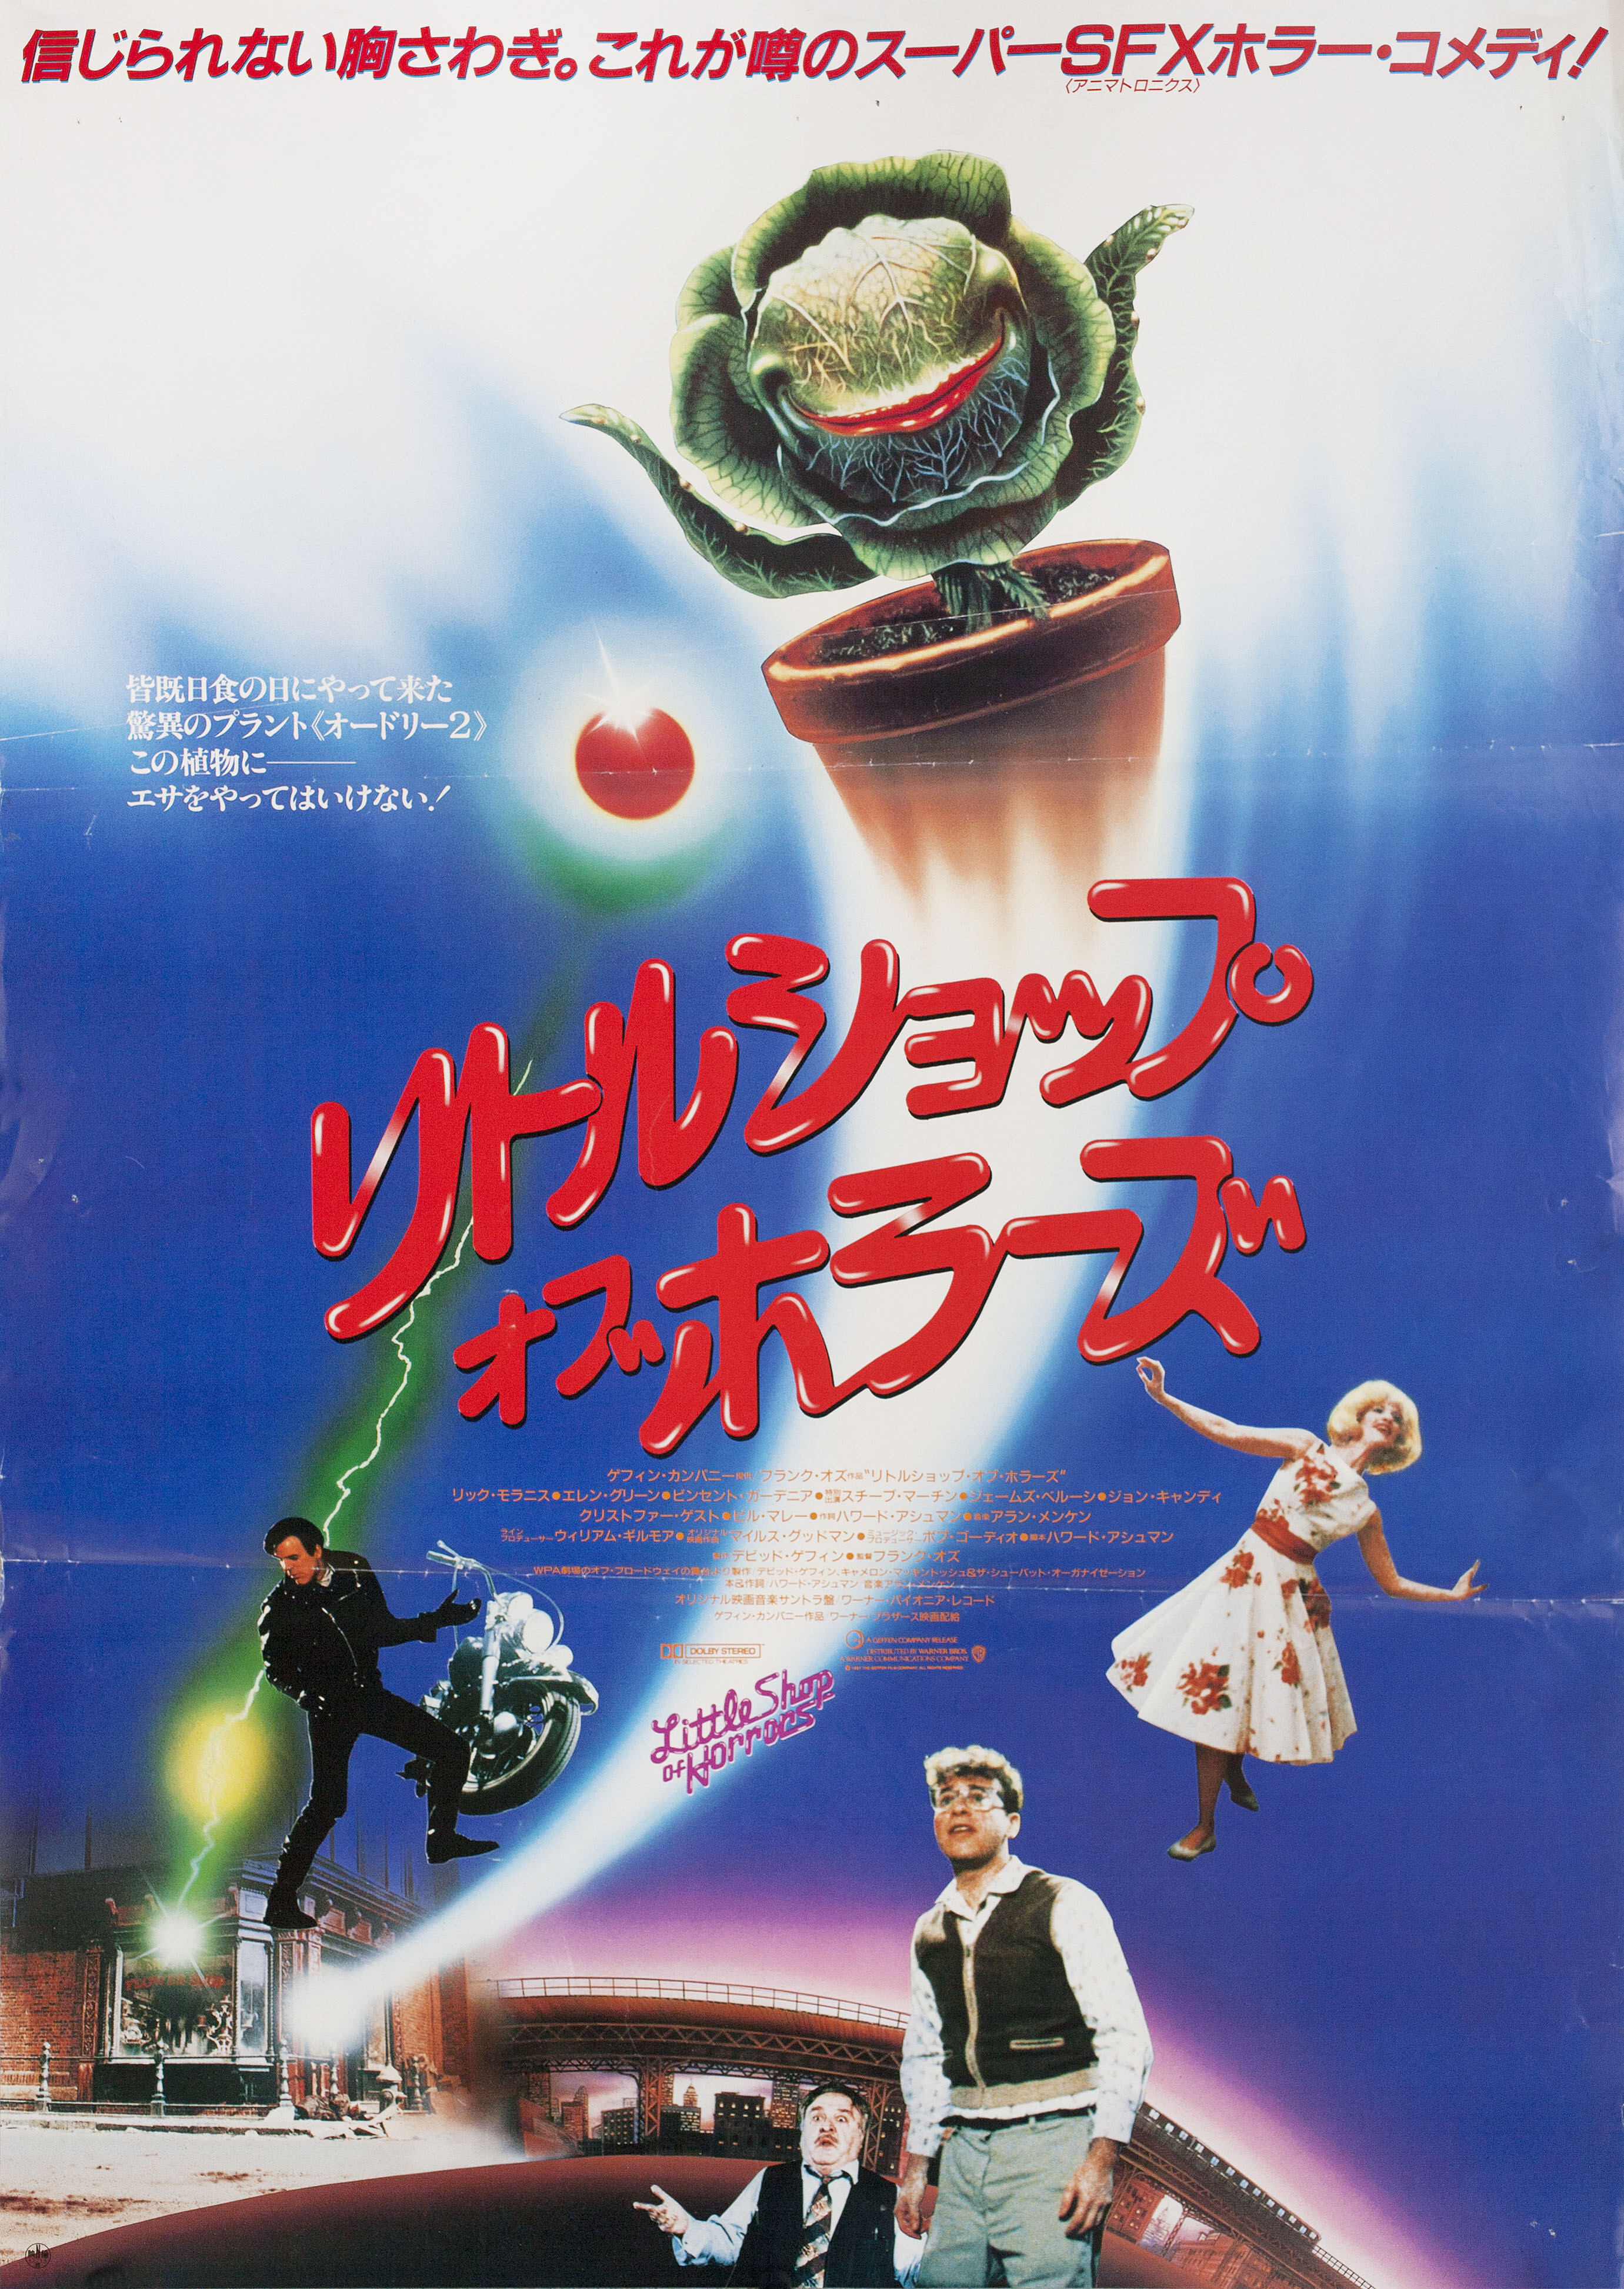 Магазинчик ужасов (Little Shop of Horrors, 1986), режиссёр Фрэнк Оз, японский постер к фильму (ужасы, 1987 год)